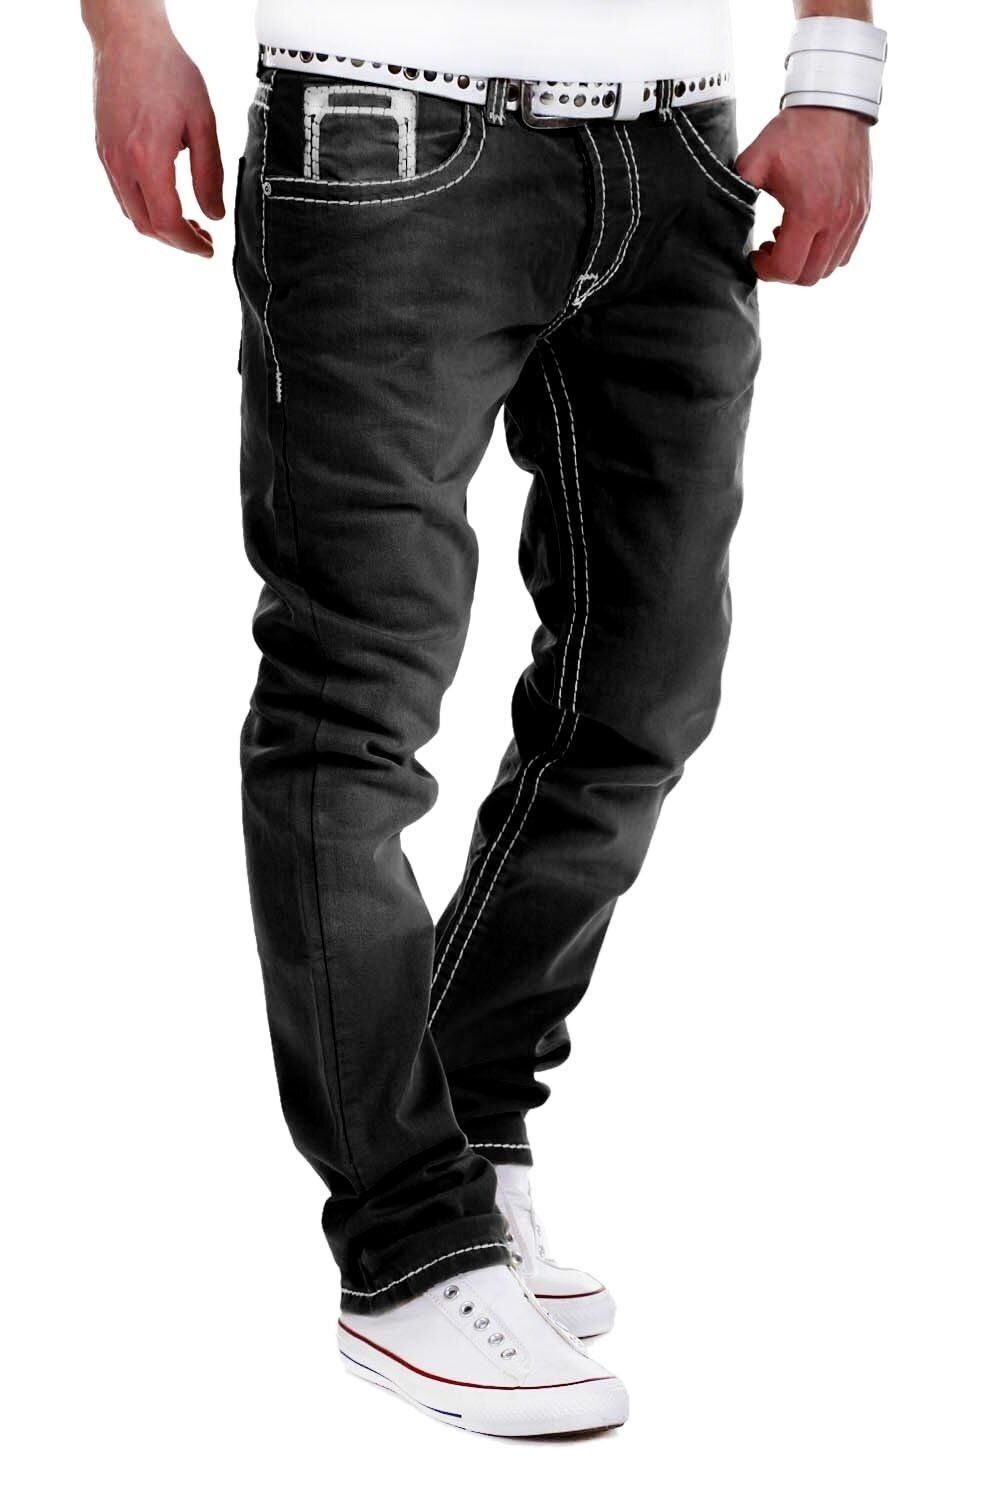 Stitch behype Jeans mit dicken Bequeme Kontrastnähten schwarz